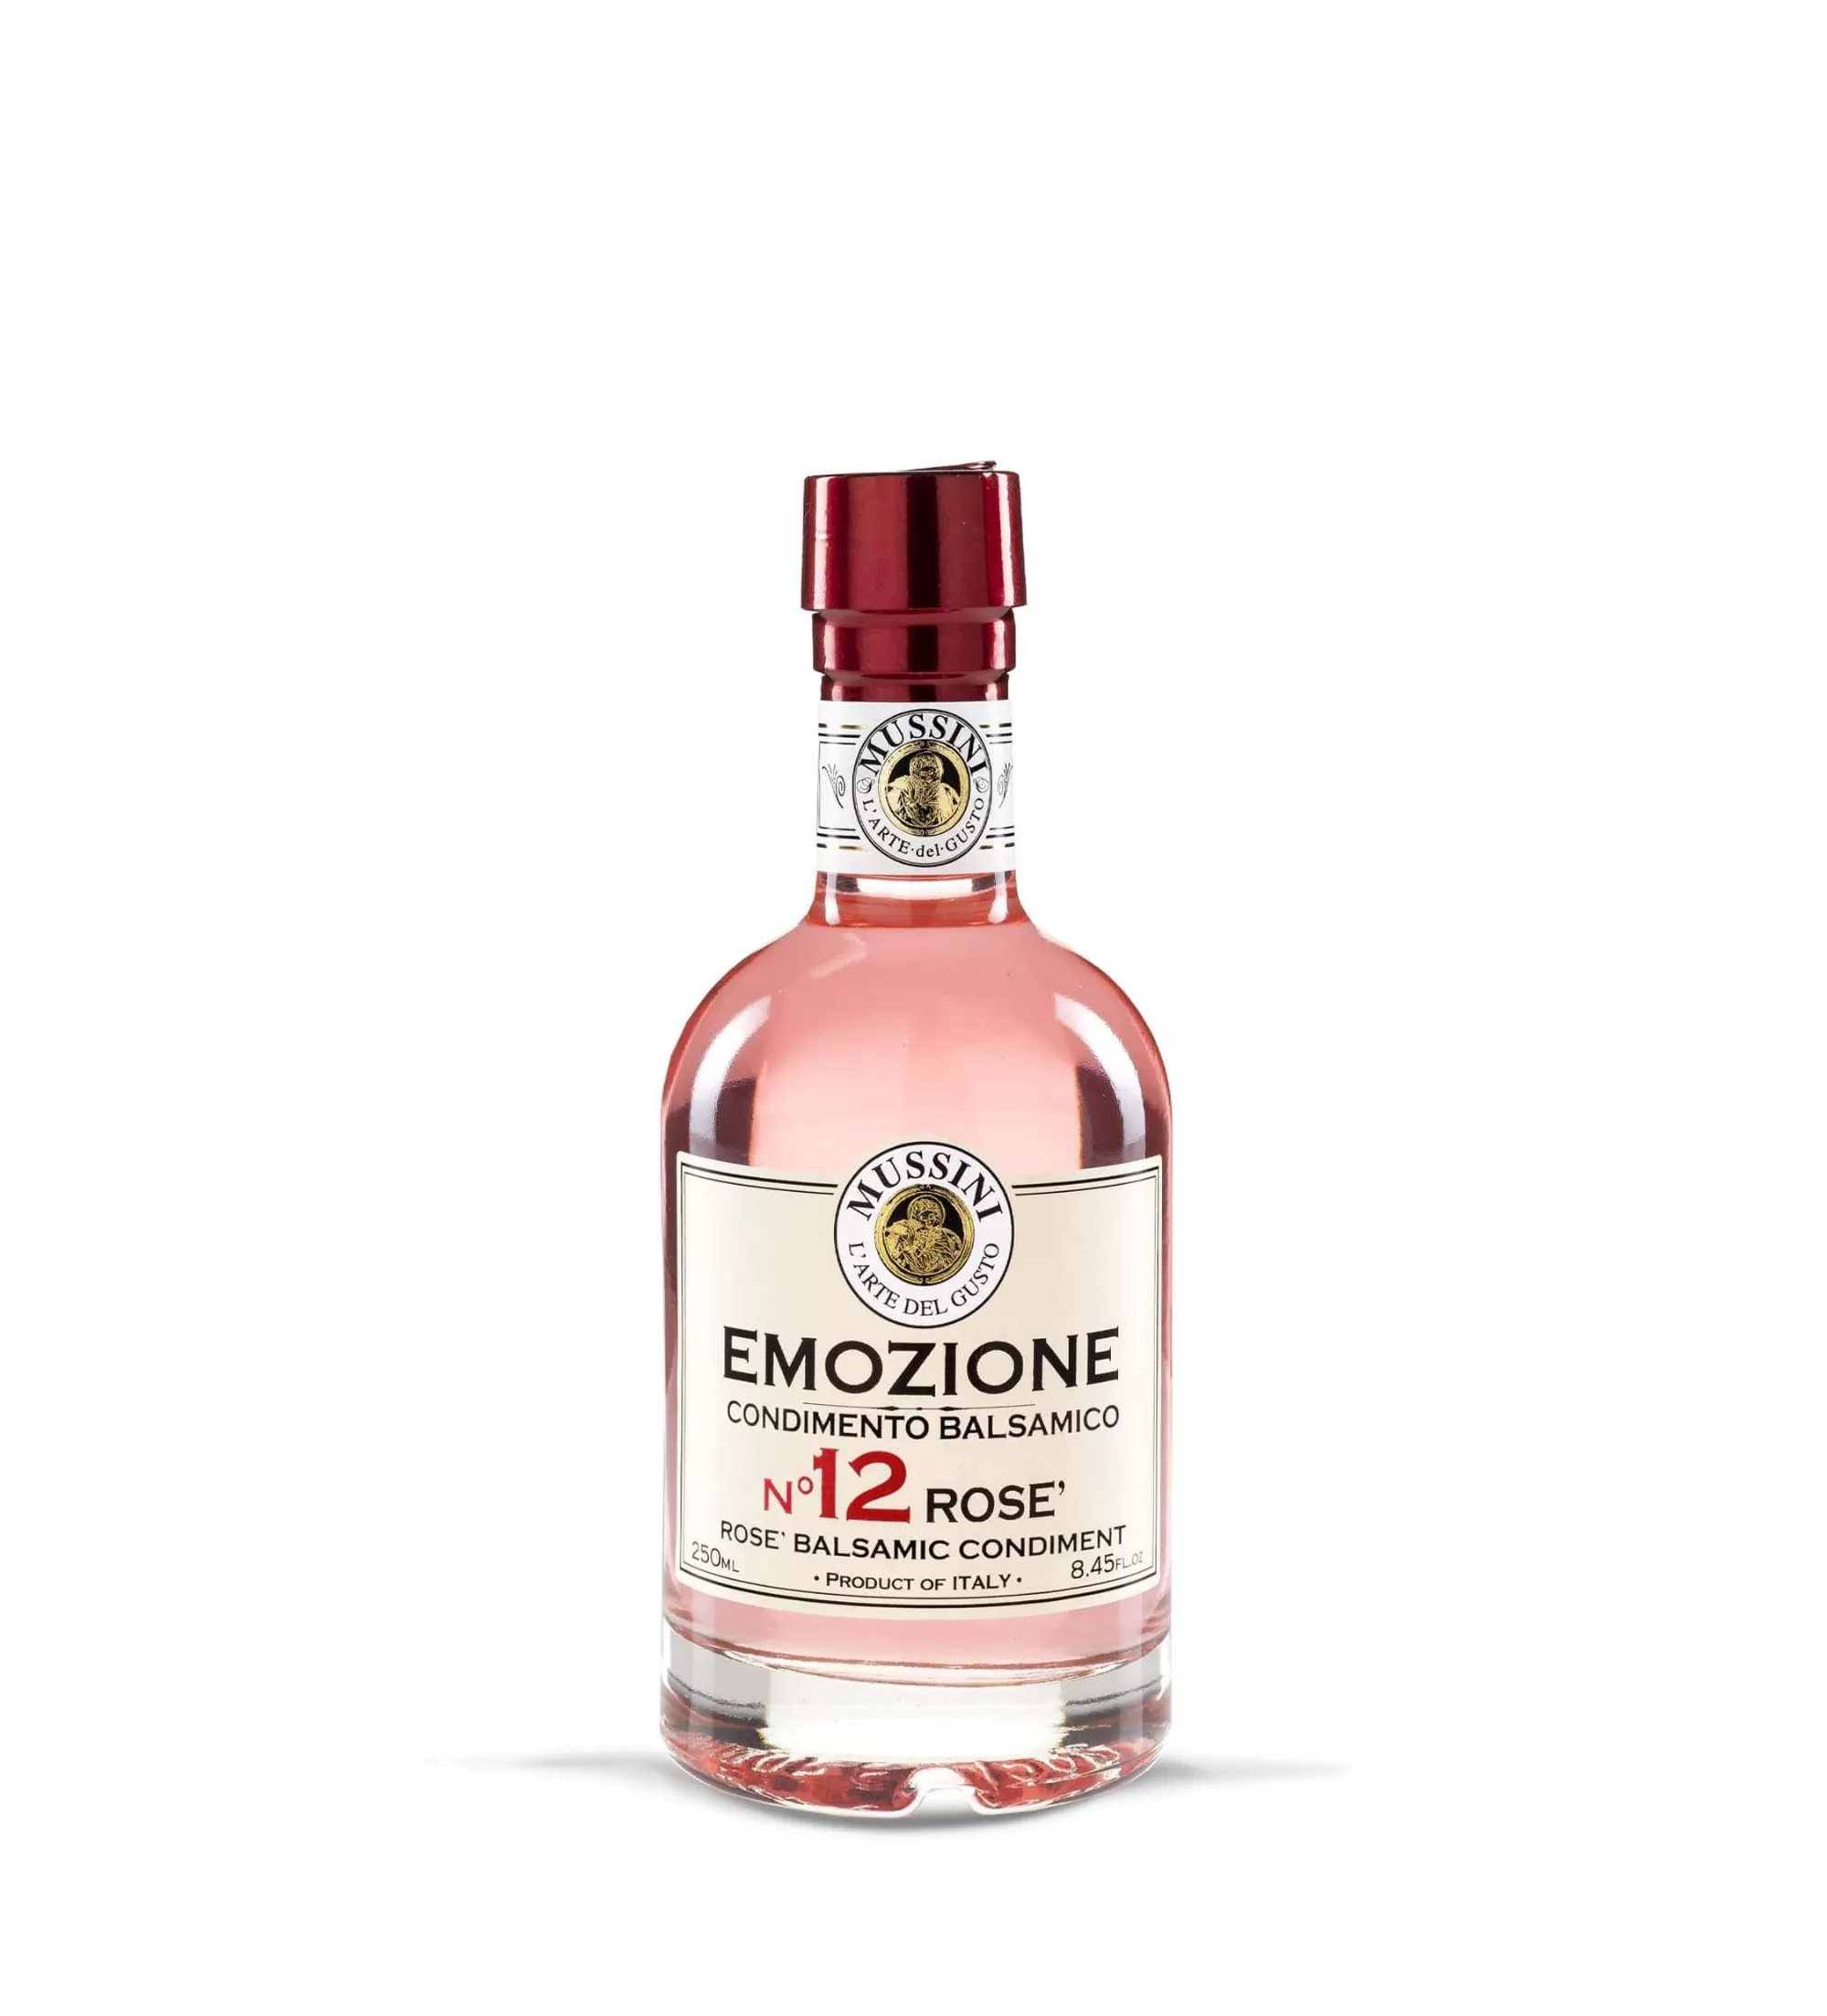 Condimento Balsamico Rosé "EMOZIONE No.12" 